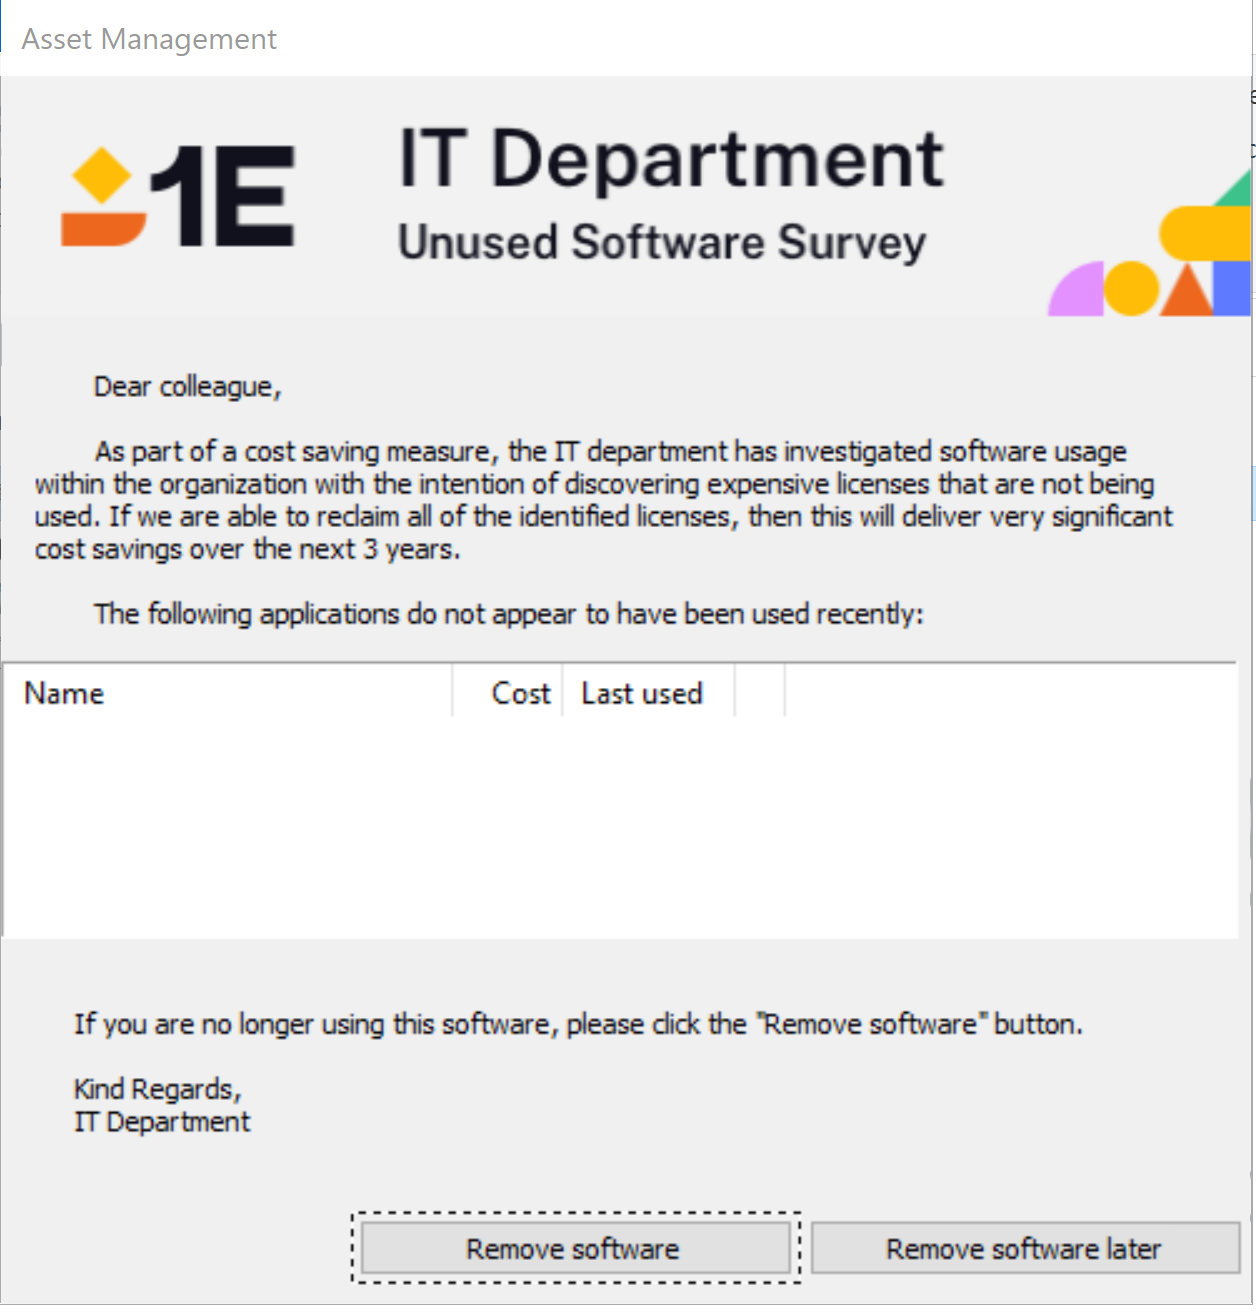 SR_-_Unused_Software_Survey.png